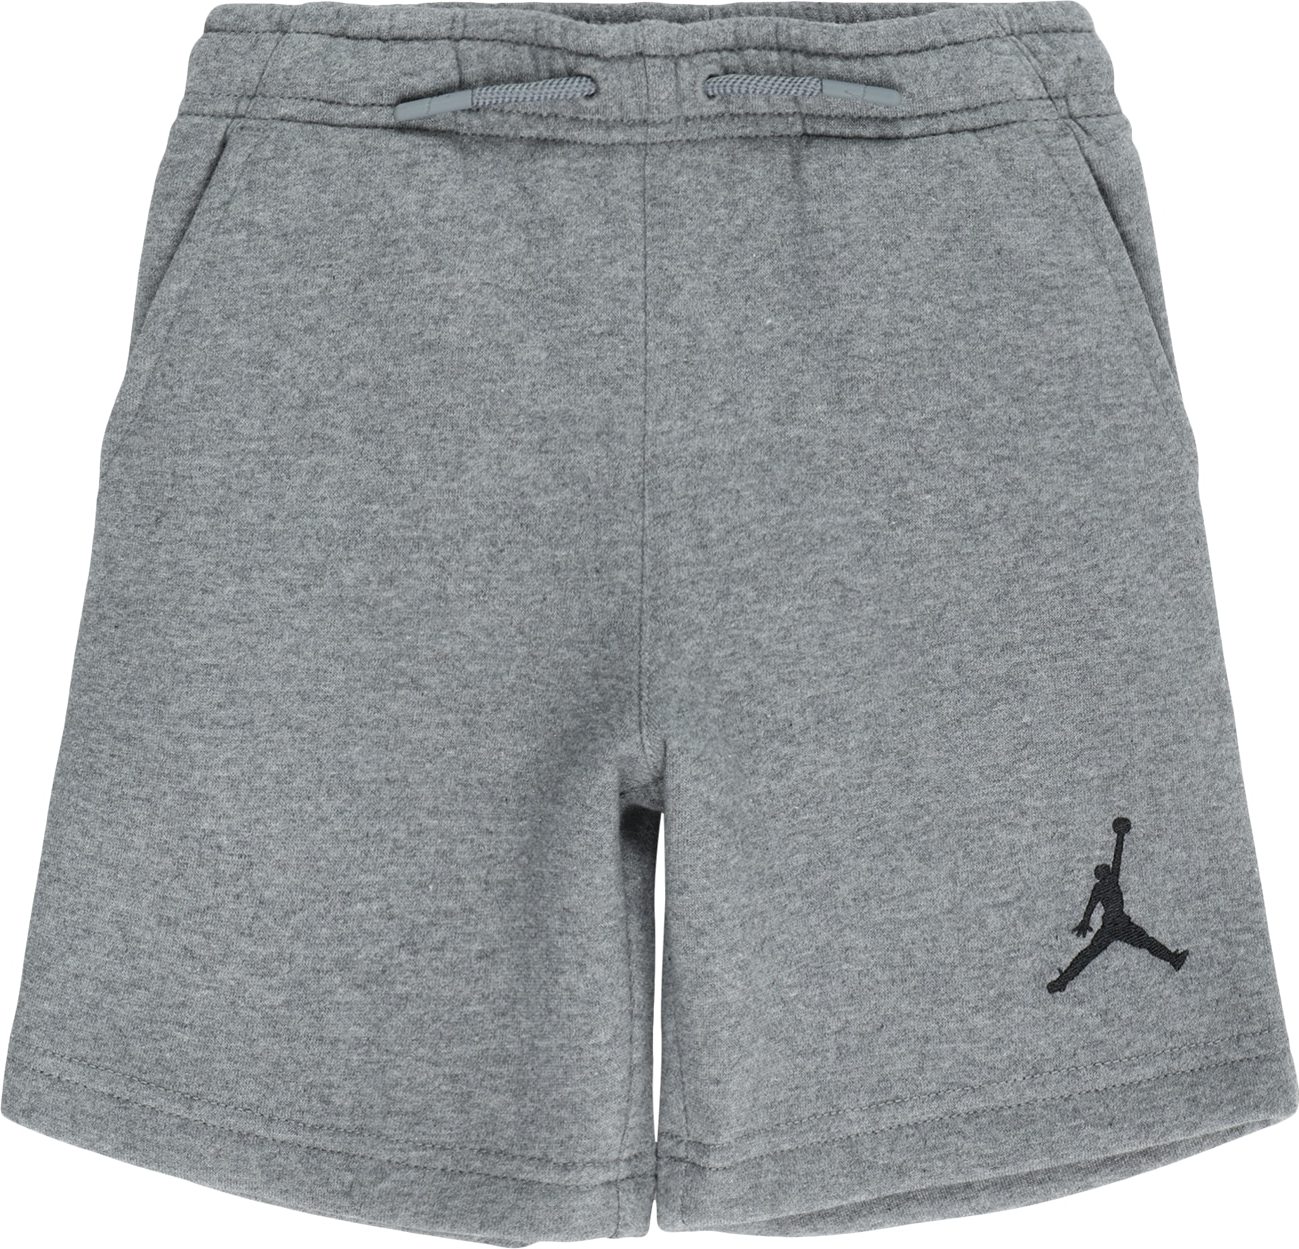 Kalhoty Jordan šedý melír / černá